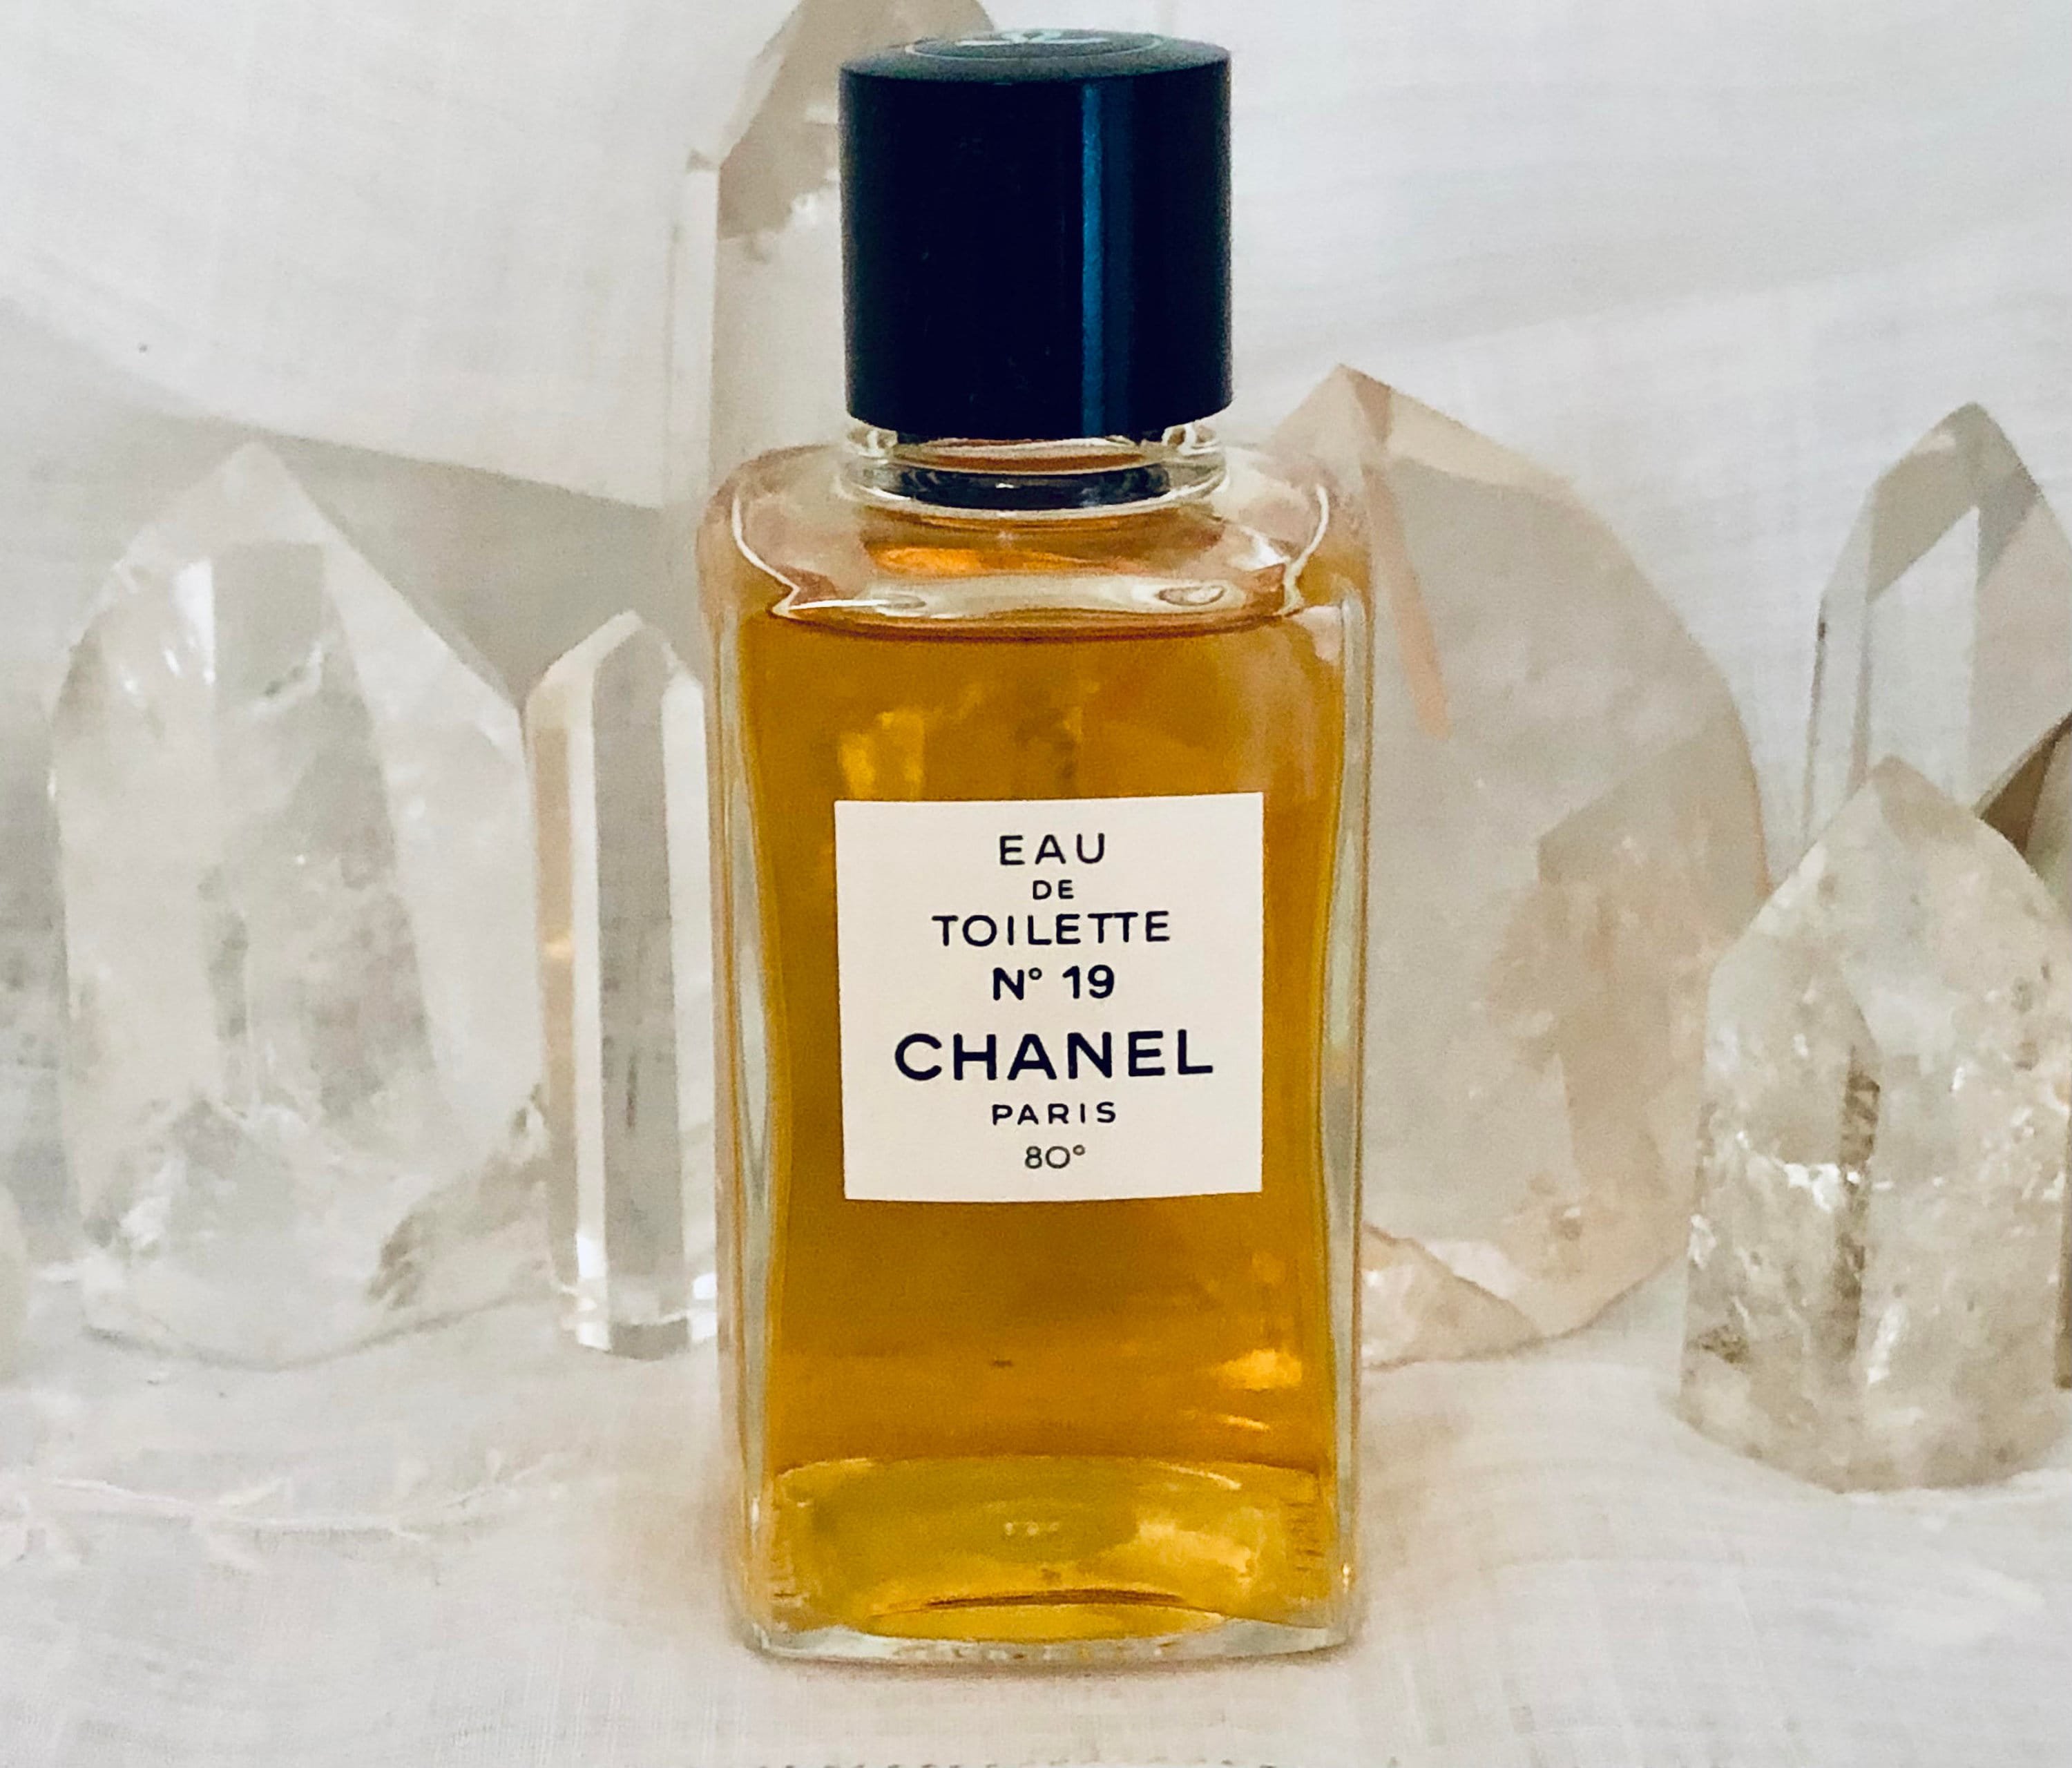 CHANEL No.19 Eau de Parfum - Reviews